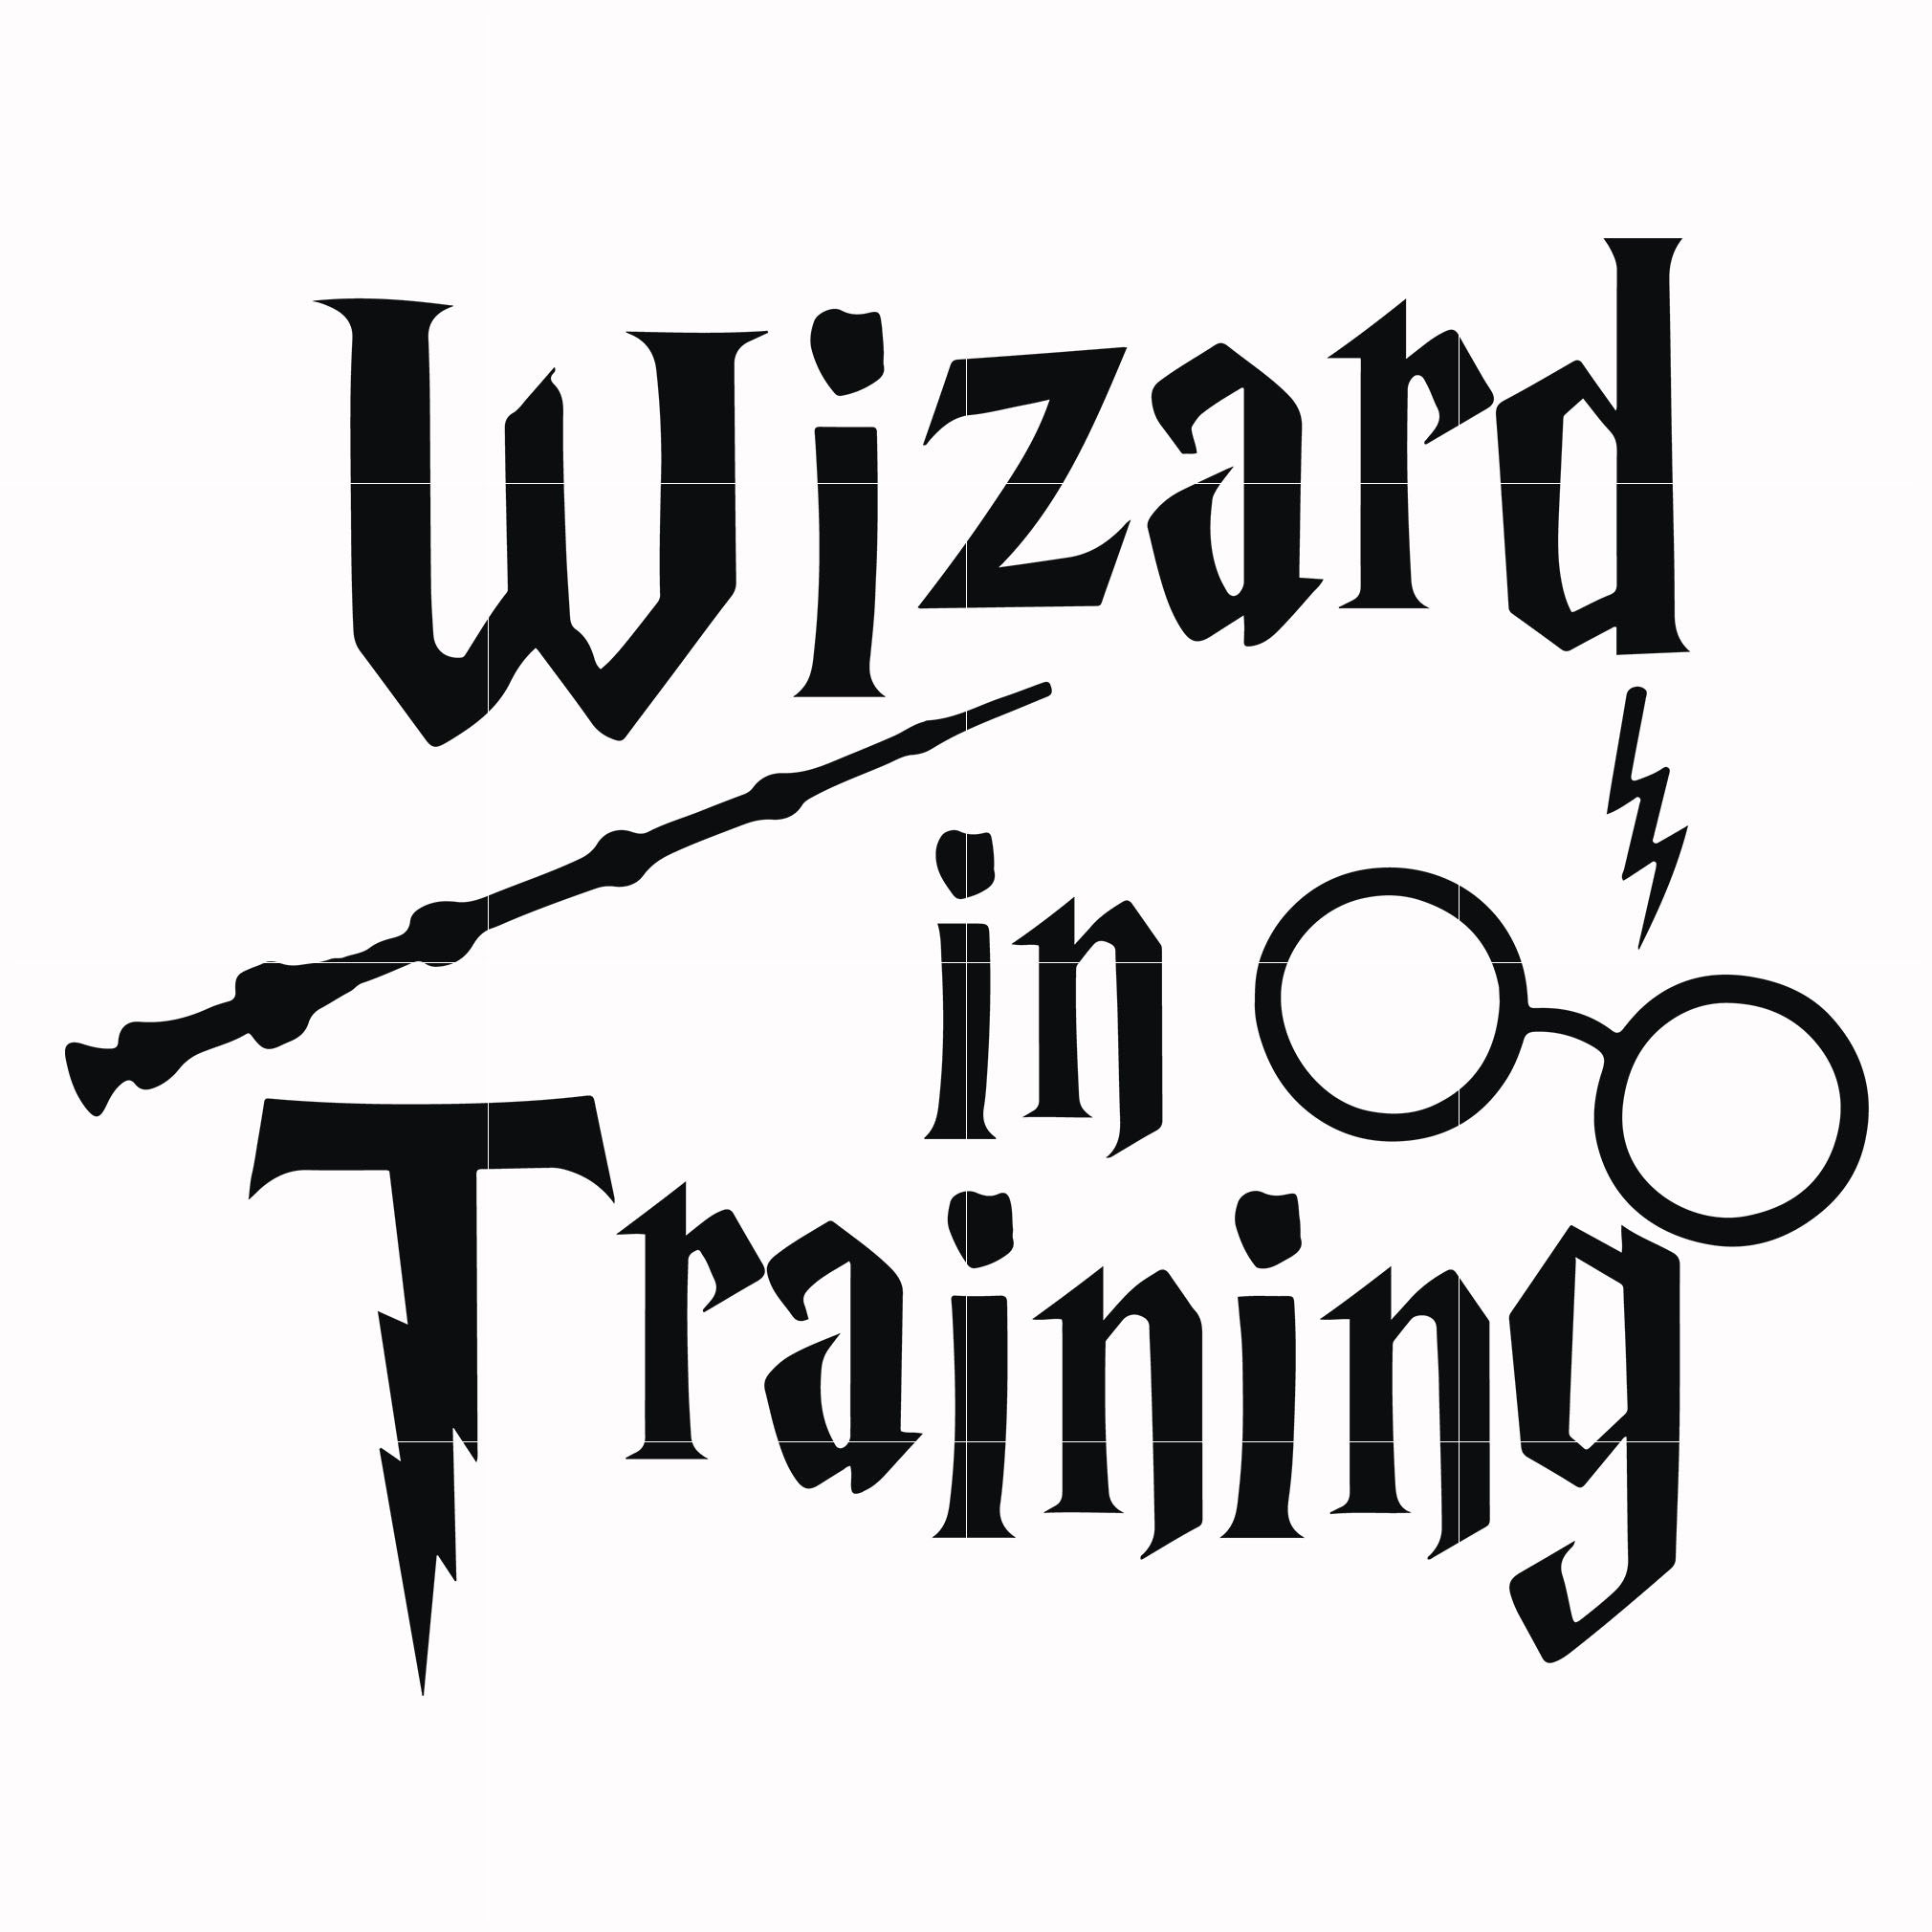 Harry Potter T Shirt Svg - 2215+ Popular SVG Design - Free SVG Cut Files